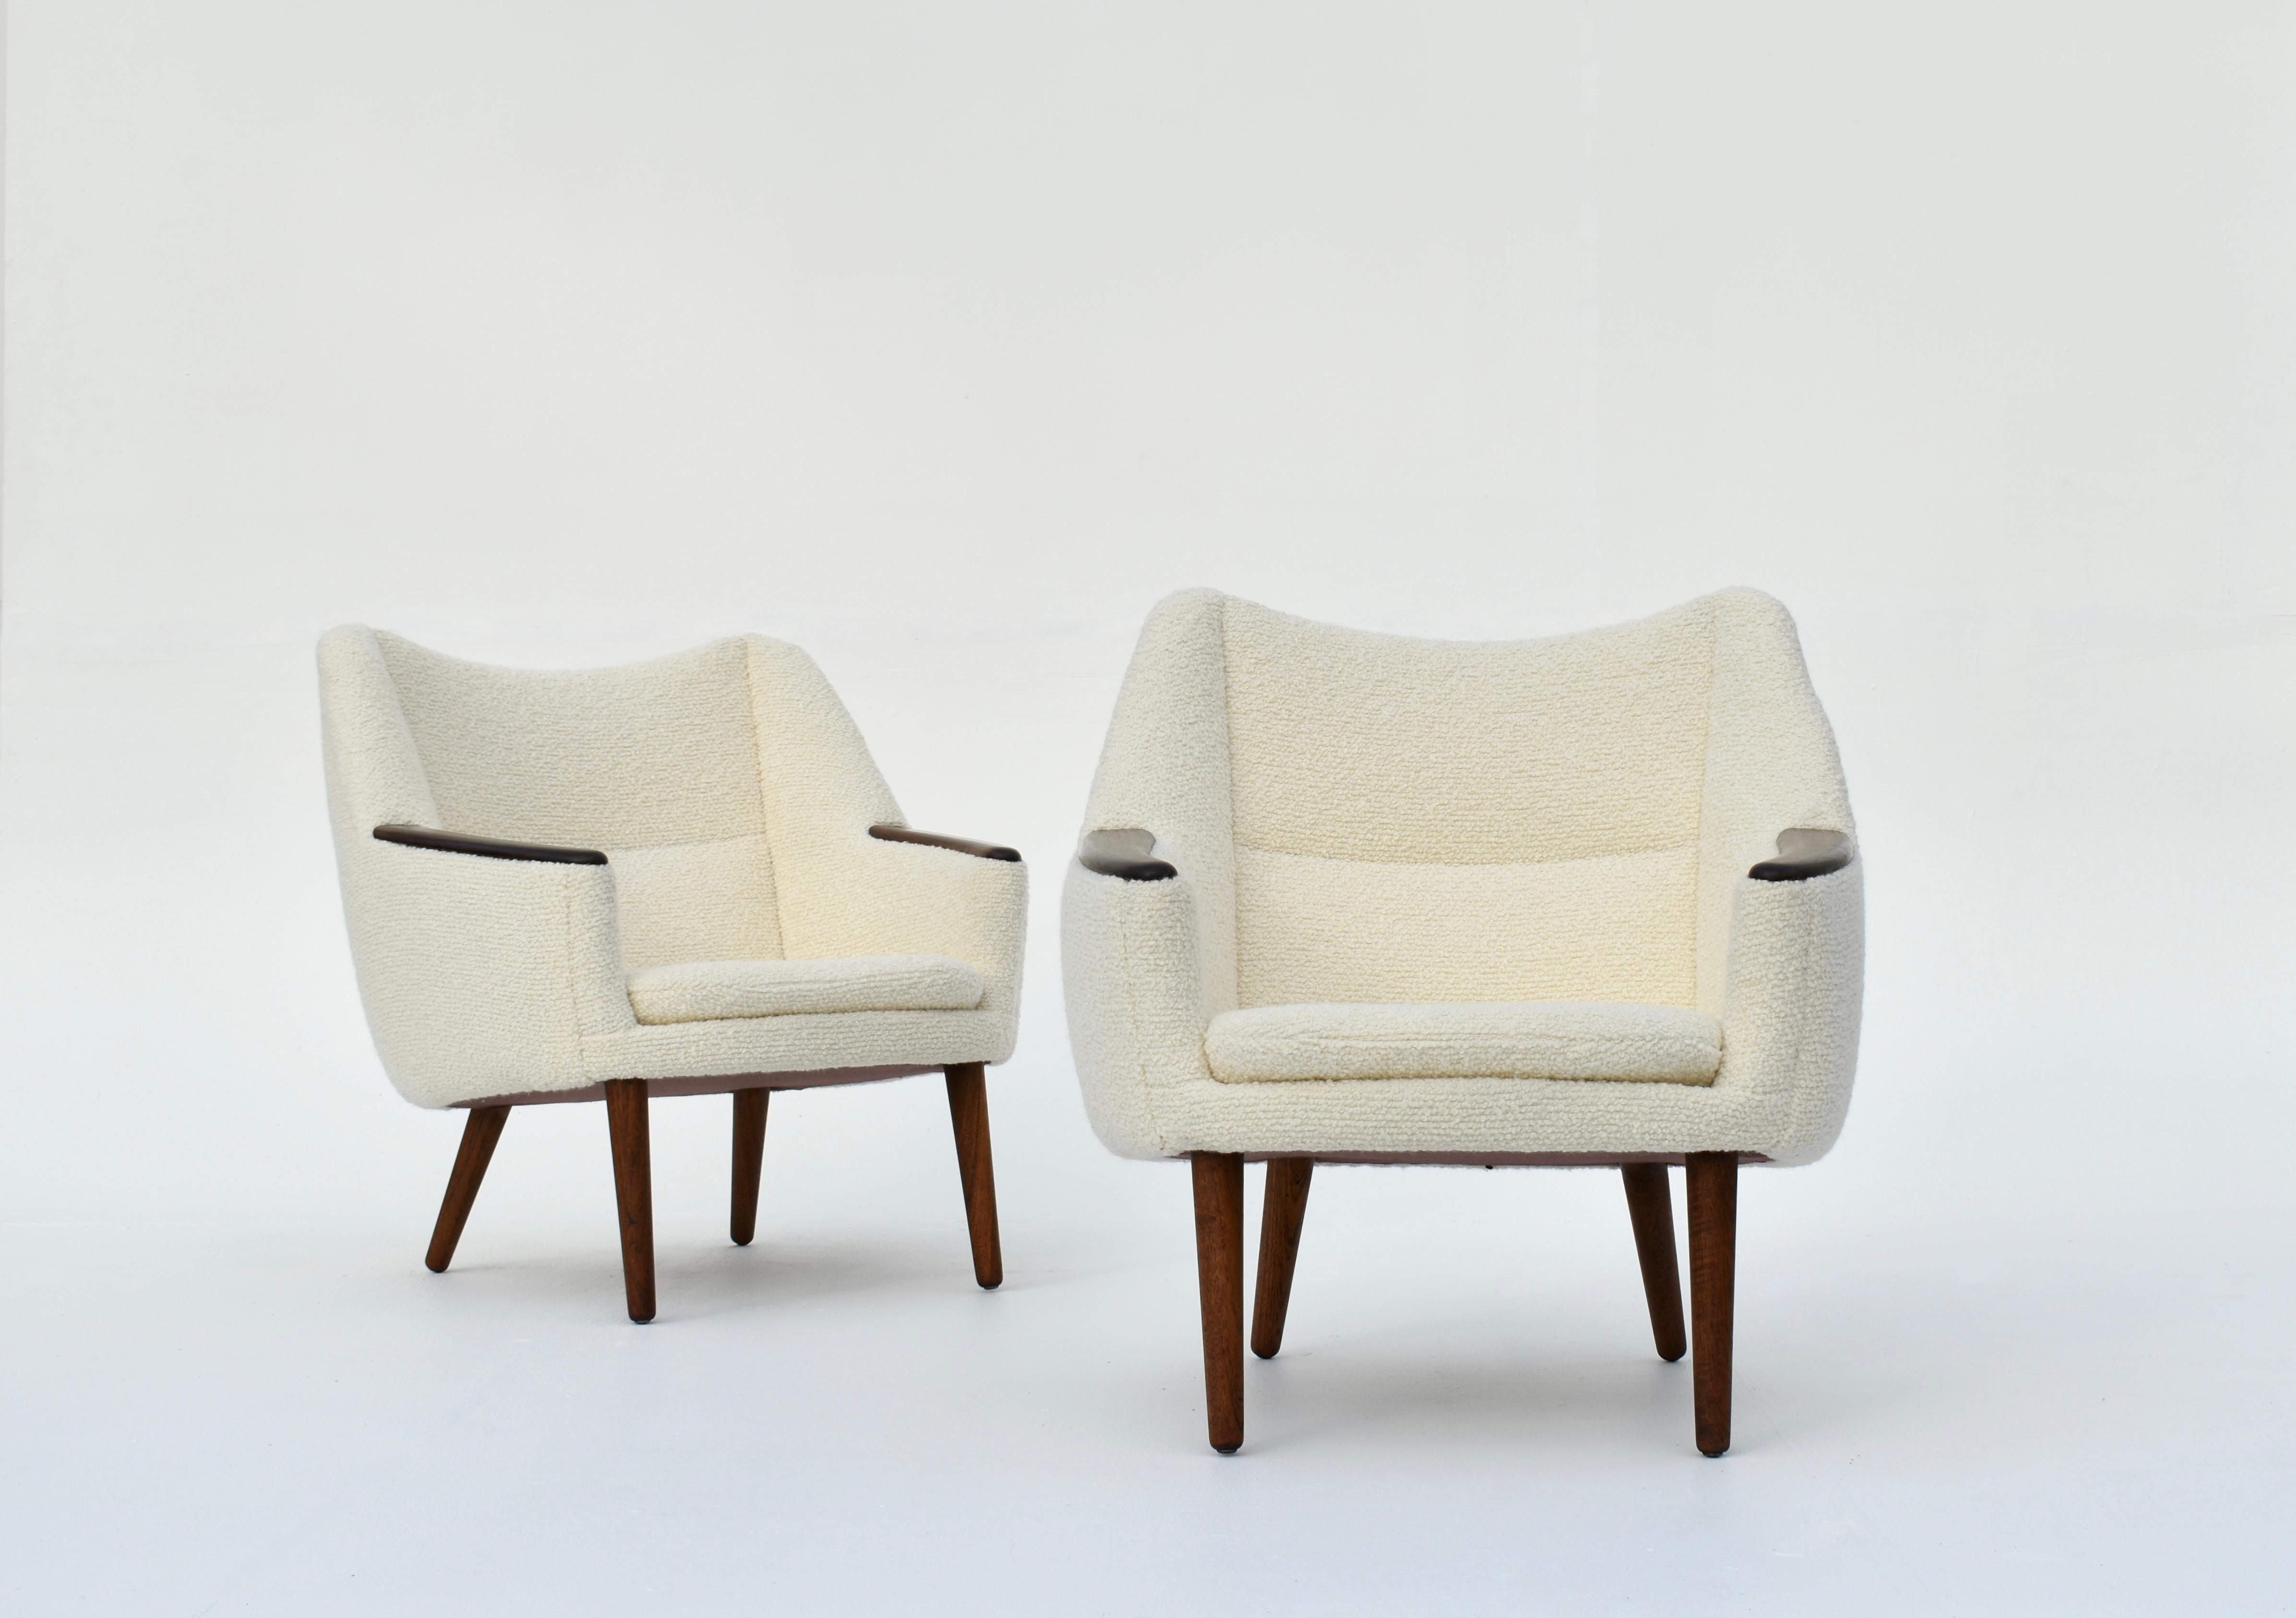 Une paire très difficile à trouver de chaises longues Design/One 58 conçues à la fin des années 50 par Kurt Østervig pour Rolschau Mobler, Danemark.

Un design incroyablement beau avec des proportions merveilleuses.

Ces chaises sont dotées